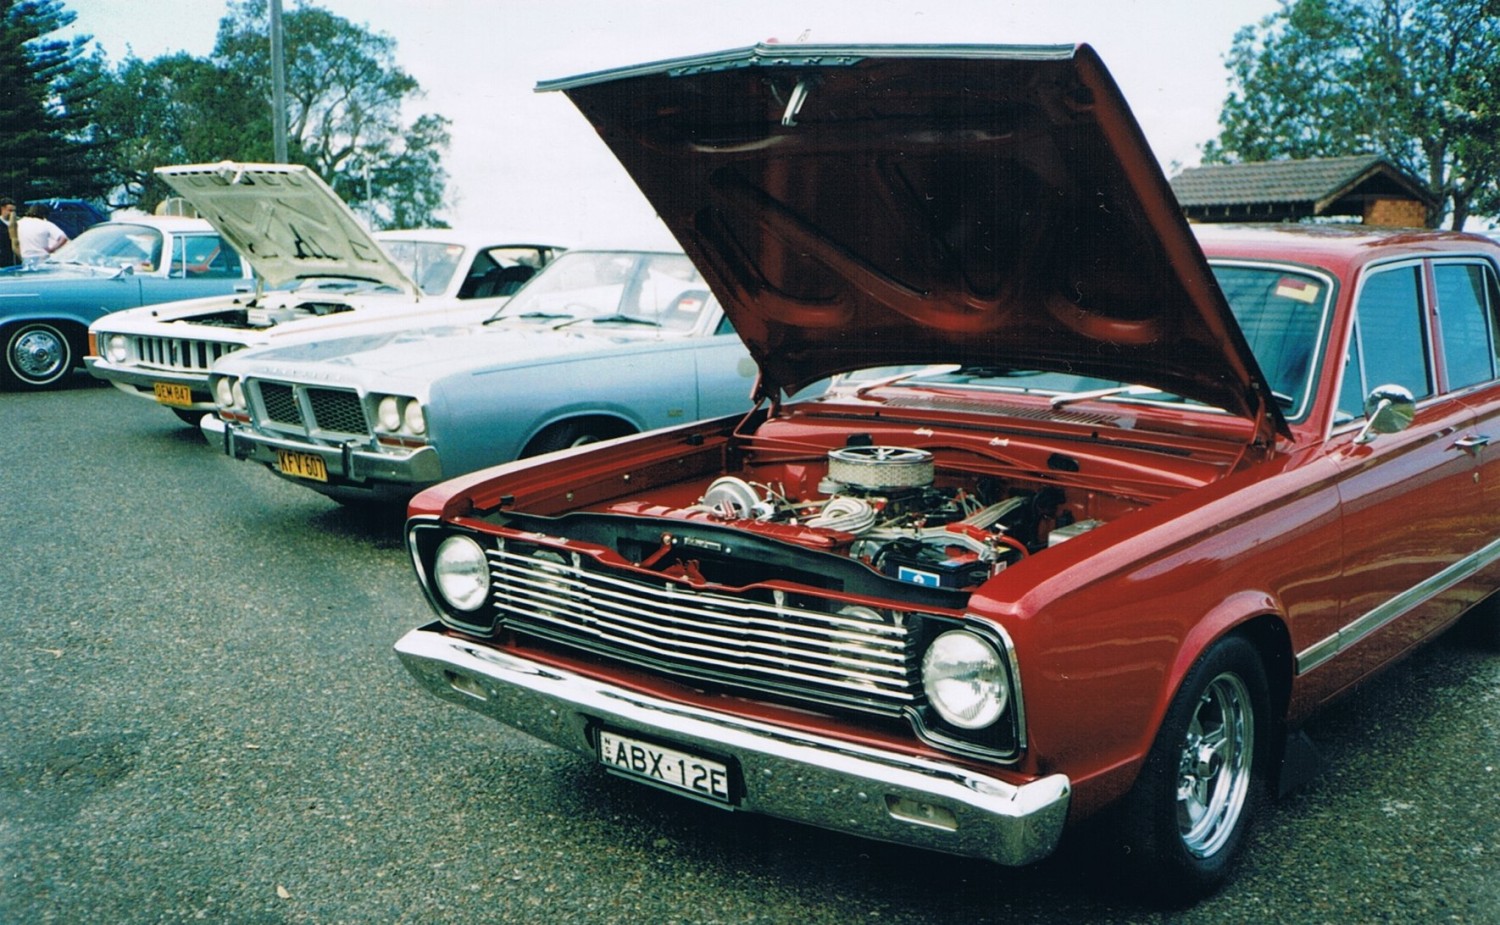 1967 Chrysler VC V8